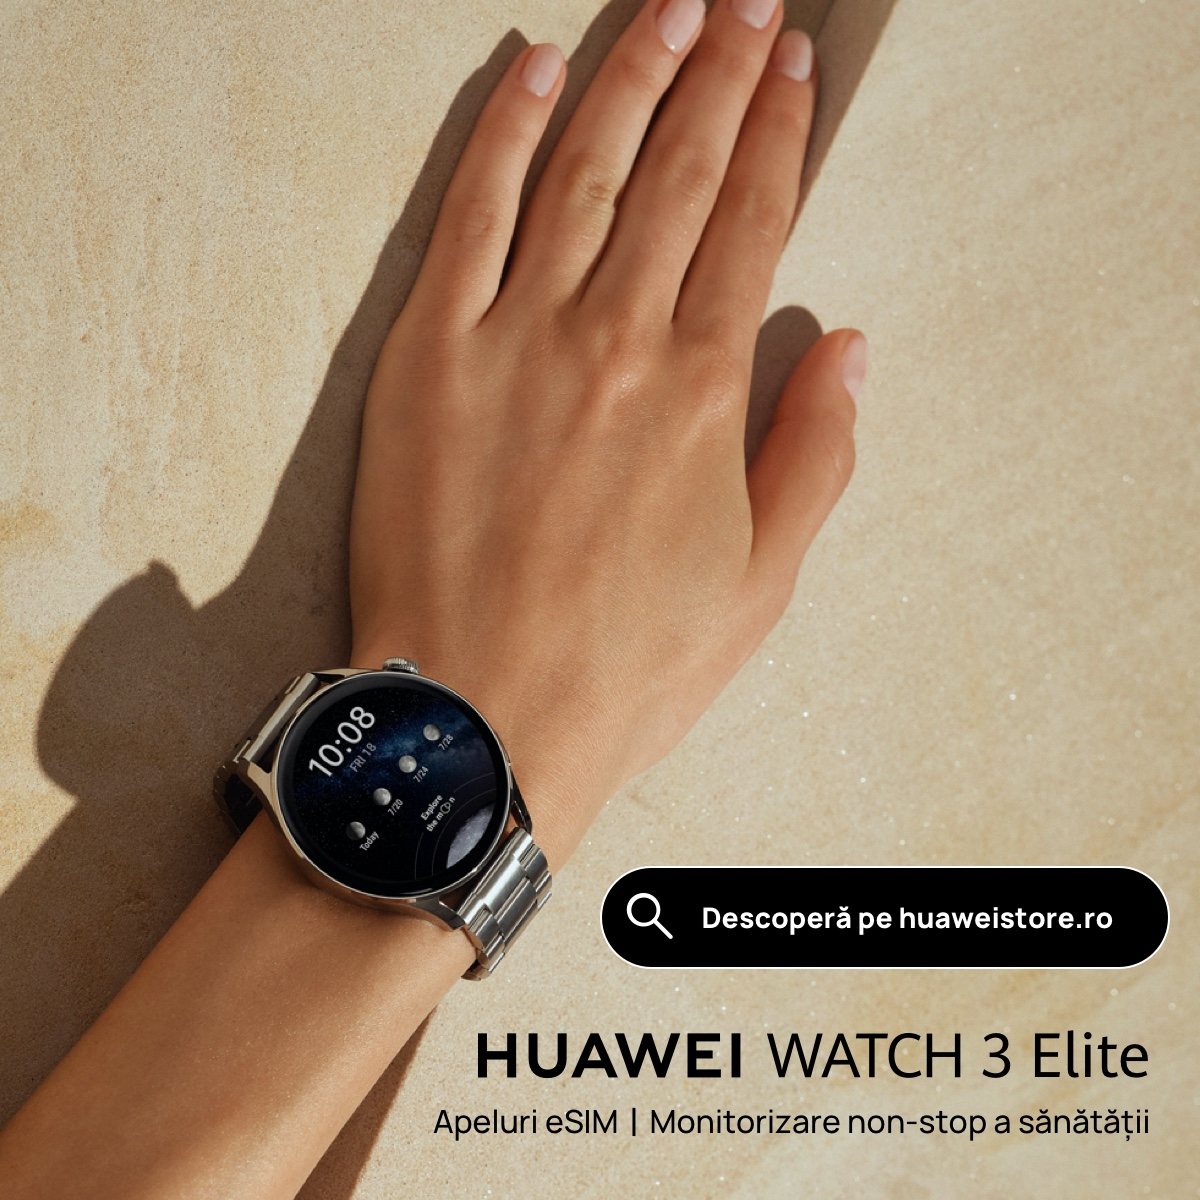 Smartwatch Huawei Watch 3 Elite, la vânzare cu o pereche de căști cadou. Preț